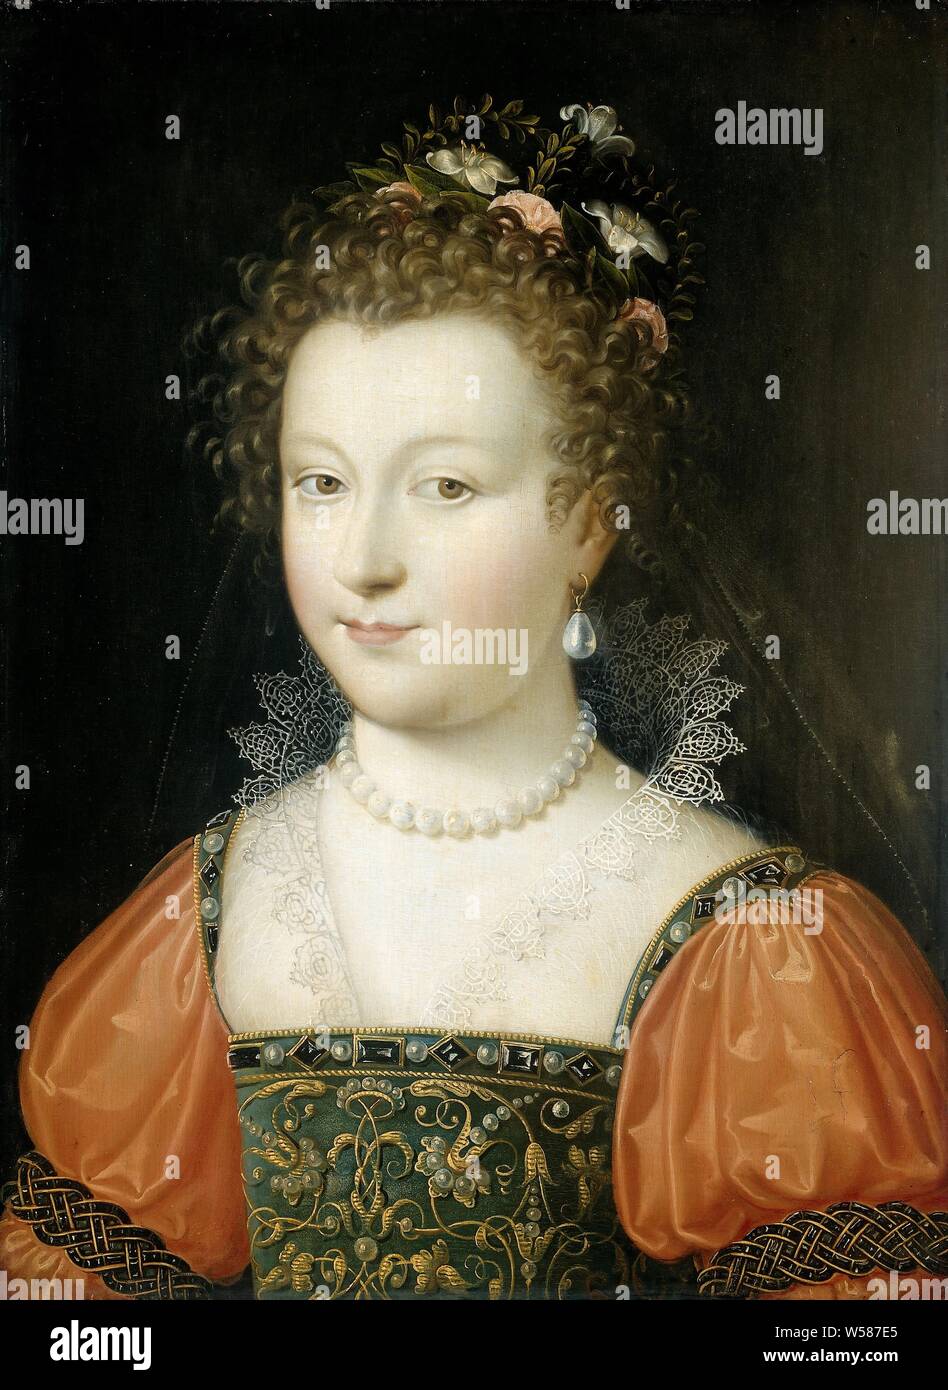 Porträt einer Frau (zuvor als Königin Elizabeth I), Porträt einer Frau. Früher als Elisabeth I (1533-1603), Königin von England identifiziert. Büste, leicht nach links, mit Blumen im Haar und eine Perlenkette um den Hals., anonym, Fontainebleau, 1550-1574, Panel, Ölfarbe (Lack), h 43,7 cm x W 32,2 cm x T 0,8 cm, d 5,0 cm Stockfoto